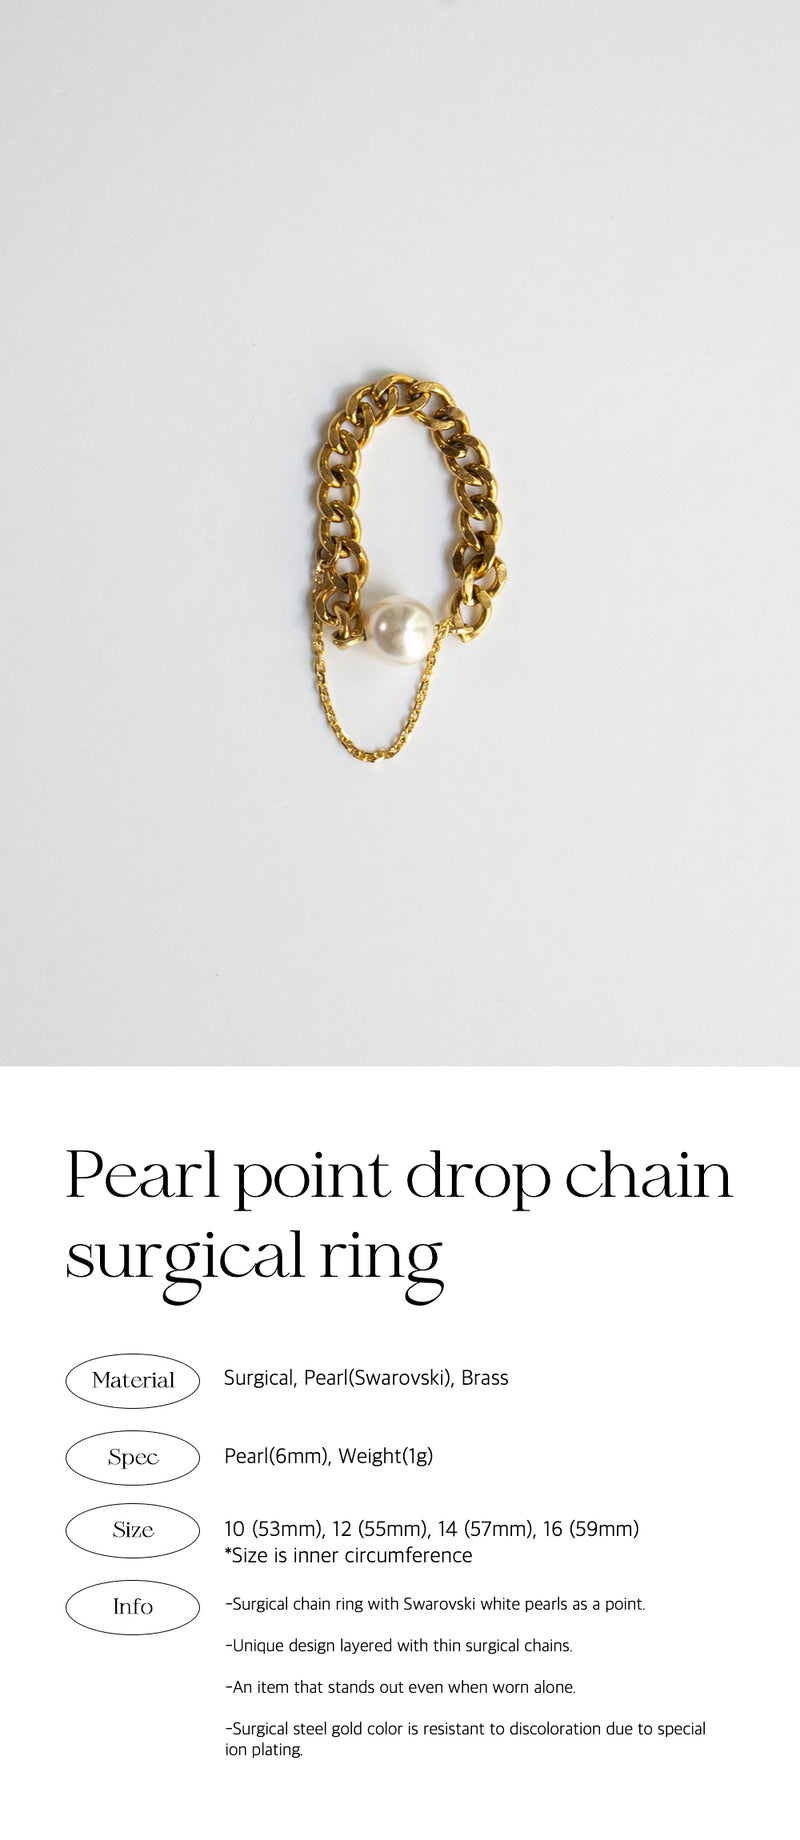 パールポイントドロップチェーンシュガーリング/Pearl point drop chain surgical ring